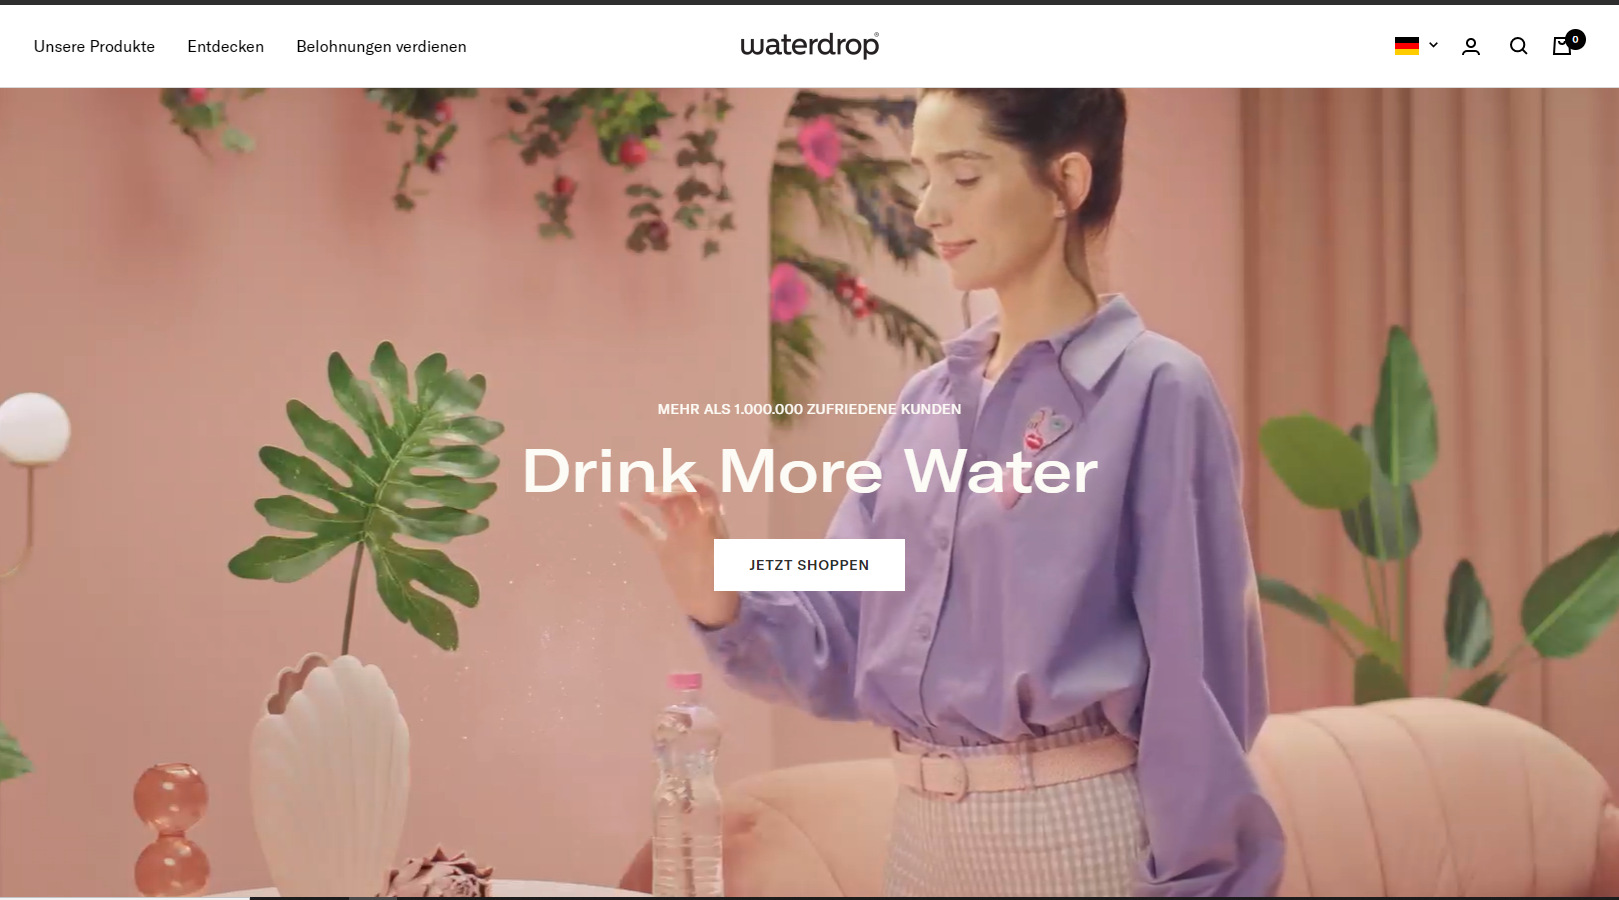 Screenshot der Homepage von Waterdrop mit der Value Proposition "Drink More Water".